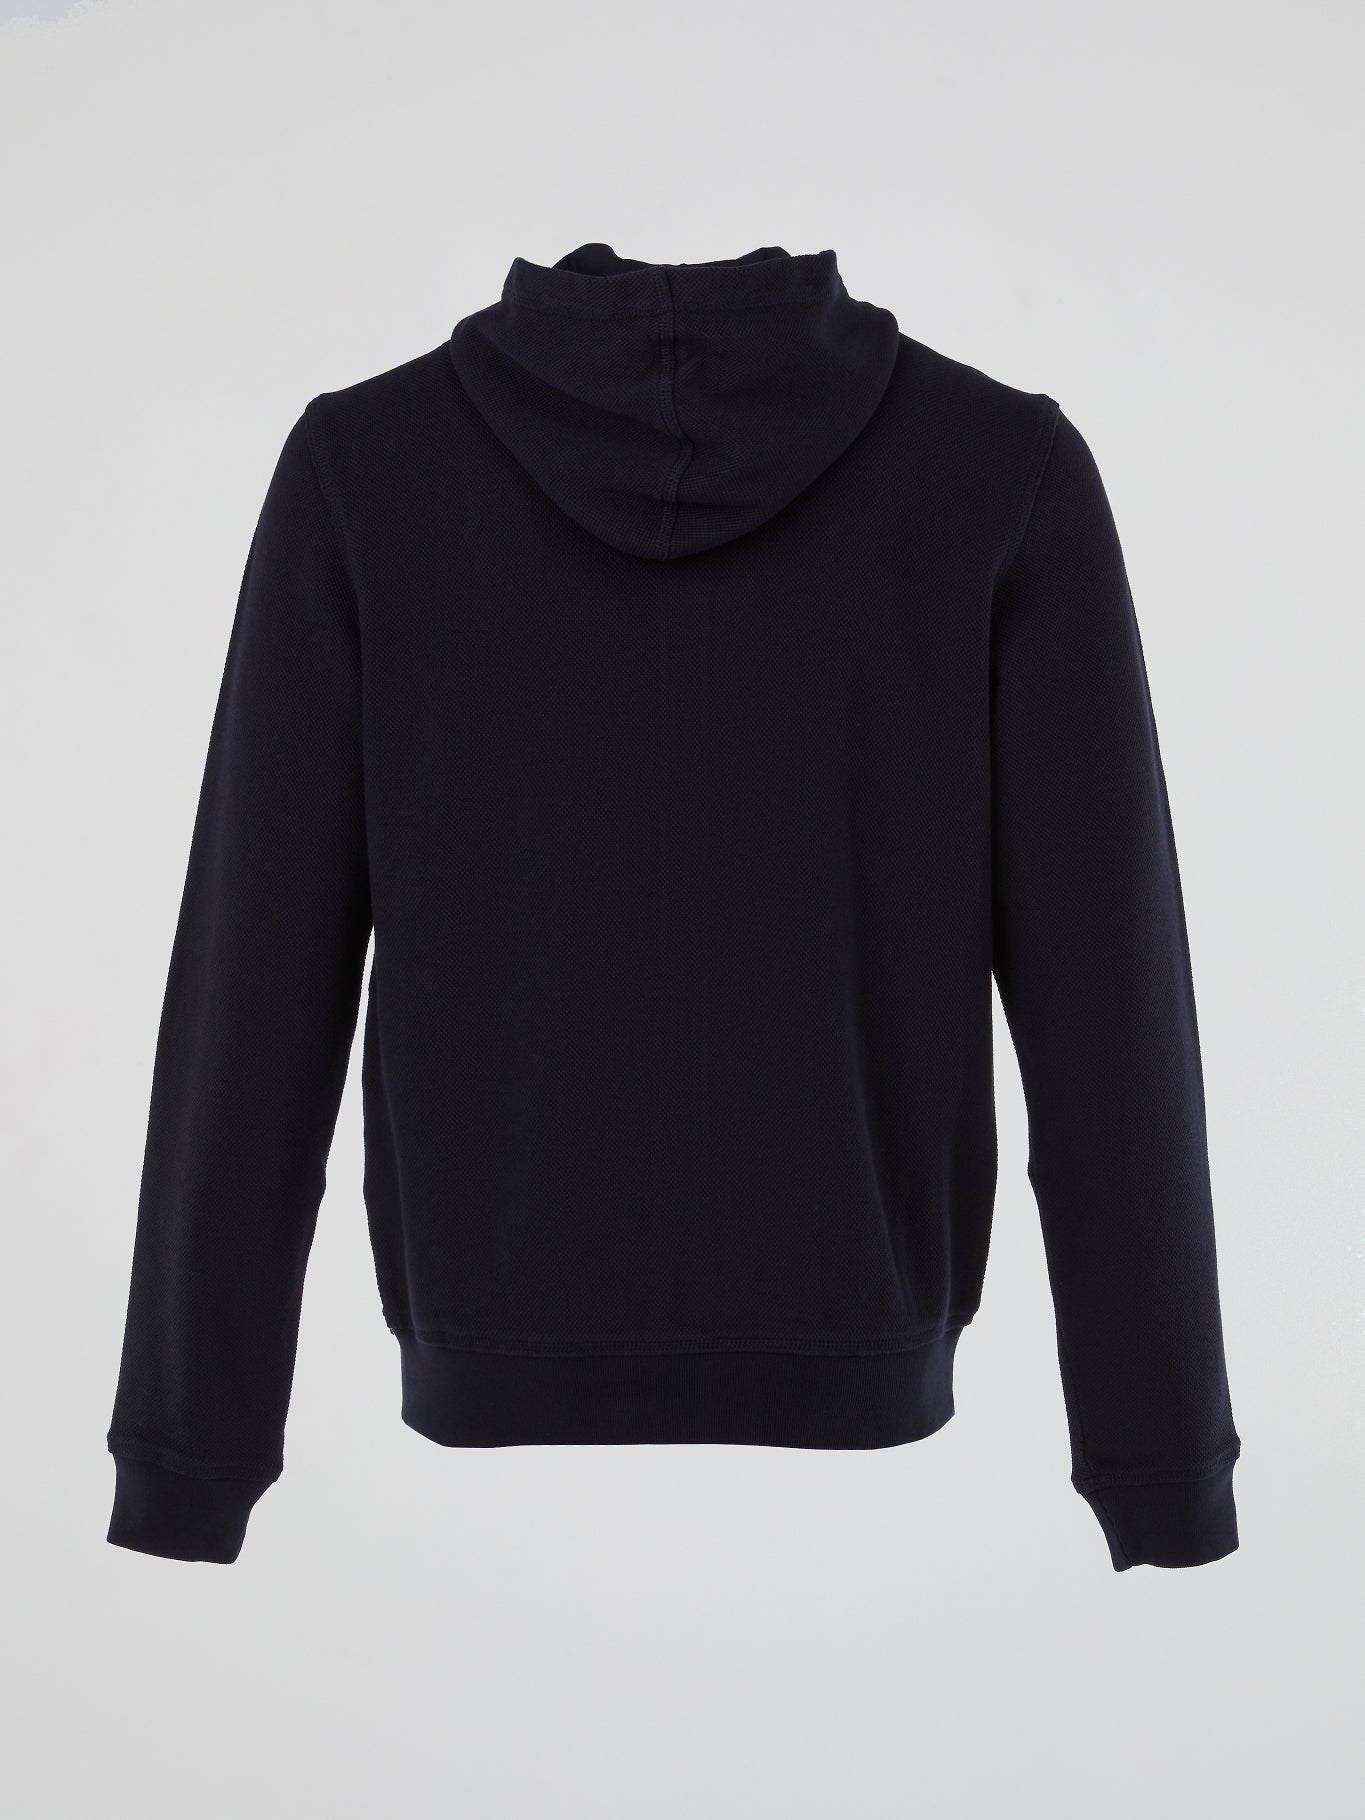 Navy Zip-Up Hooded Sweatshirt